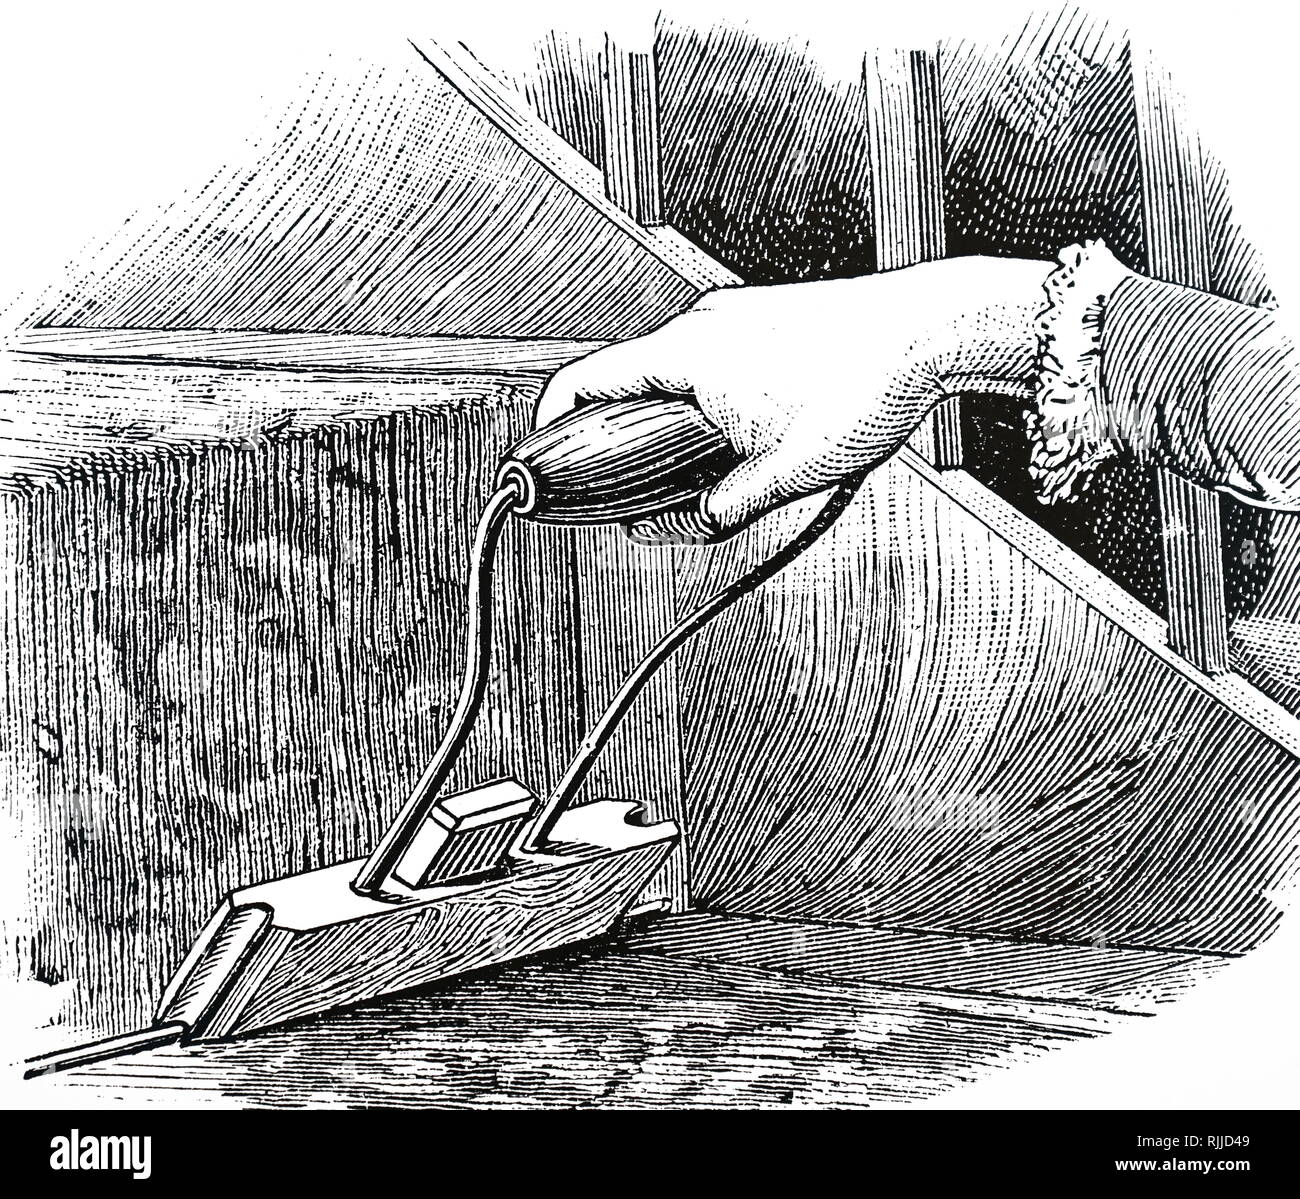 Ein kupferstich mit der Darstellung eines genutete Holz- Reinigungsmittel mit einem Fensterleder für die Reinigung der Brass stair Rods gesäumt. Vom 19. Jahrhundert Stockfoto